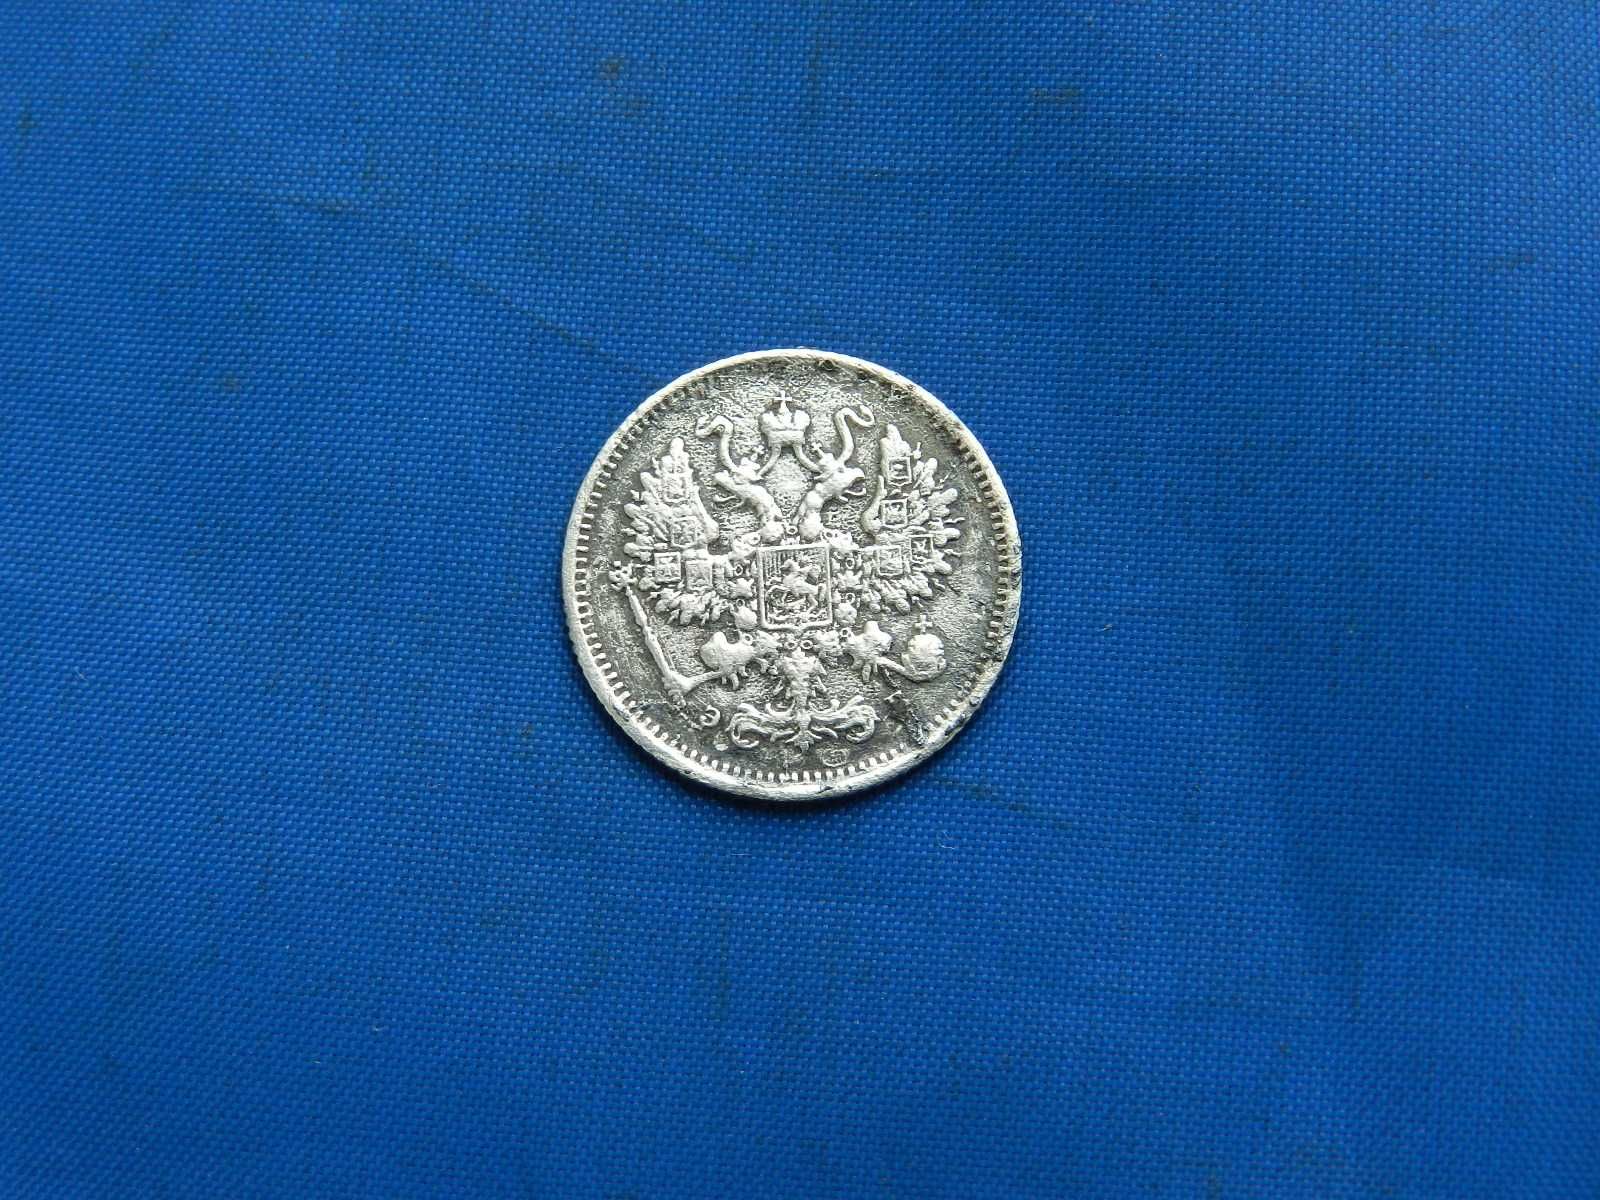 10 копеек 1899 СПБ ЭБ.Редкая монета.Оригинал.Серебро.